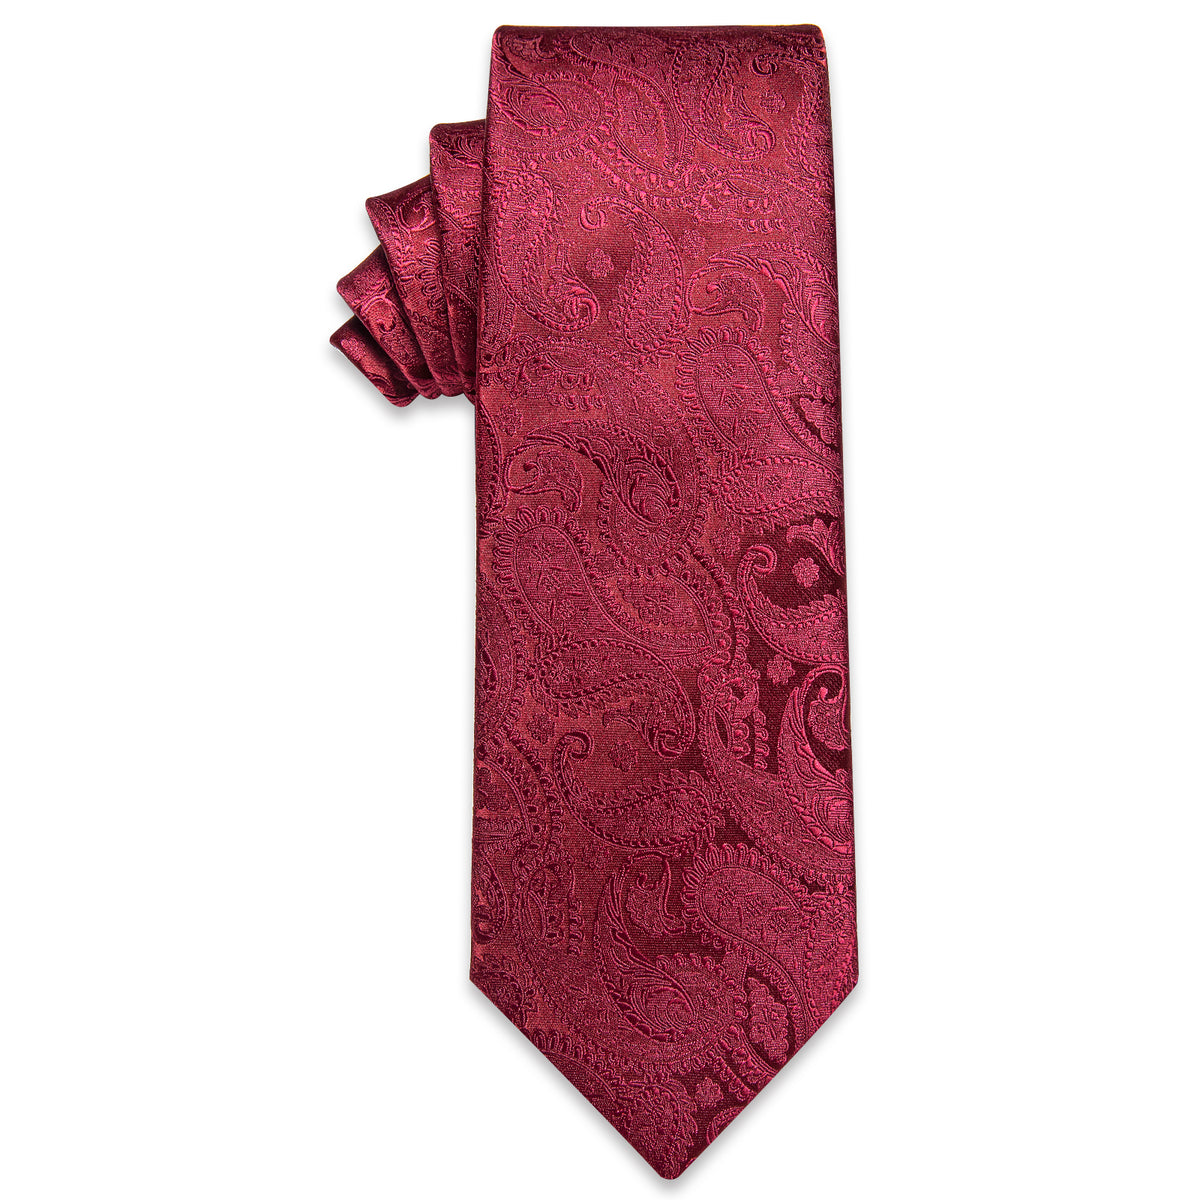 New Deep Red Paisley Silk Necktie Silk Necktie with Golden Tie Clip